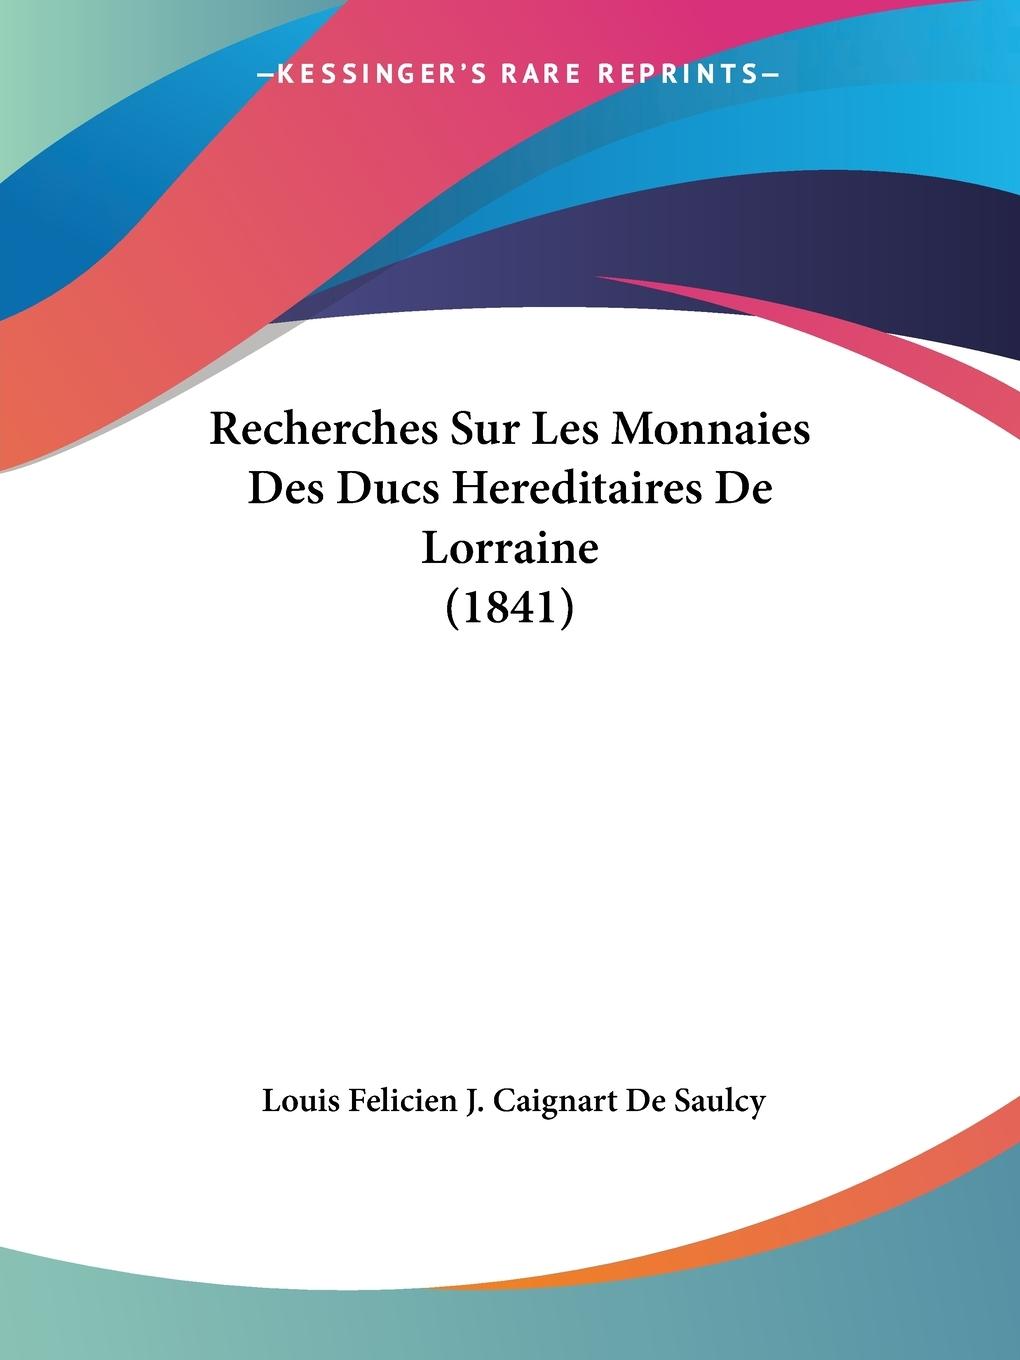 Recherches Sur Les Monnaies Des Ducs Hereditaires De Lorraine (1841) - De Saulcy, Louis Felicien J. Caignart